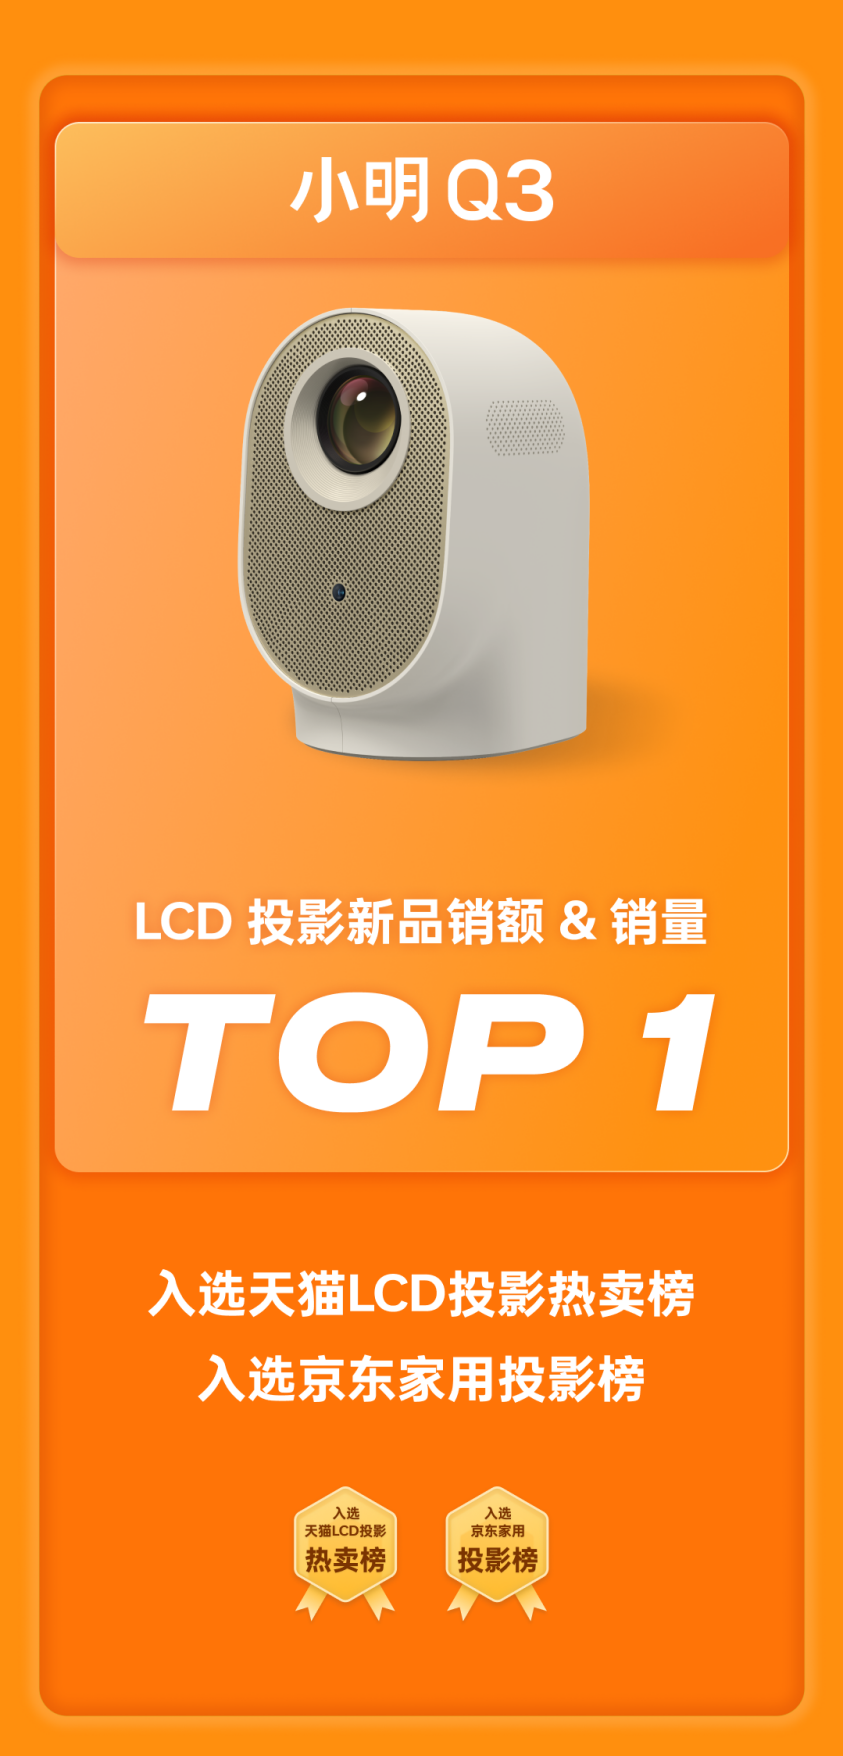 小明投影引领LCD投影市场爆发  斩获618全渠道LCD投影销额与销量TOP1